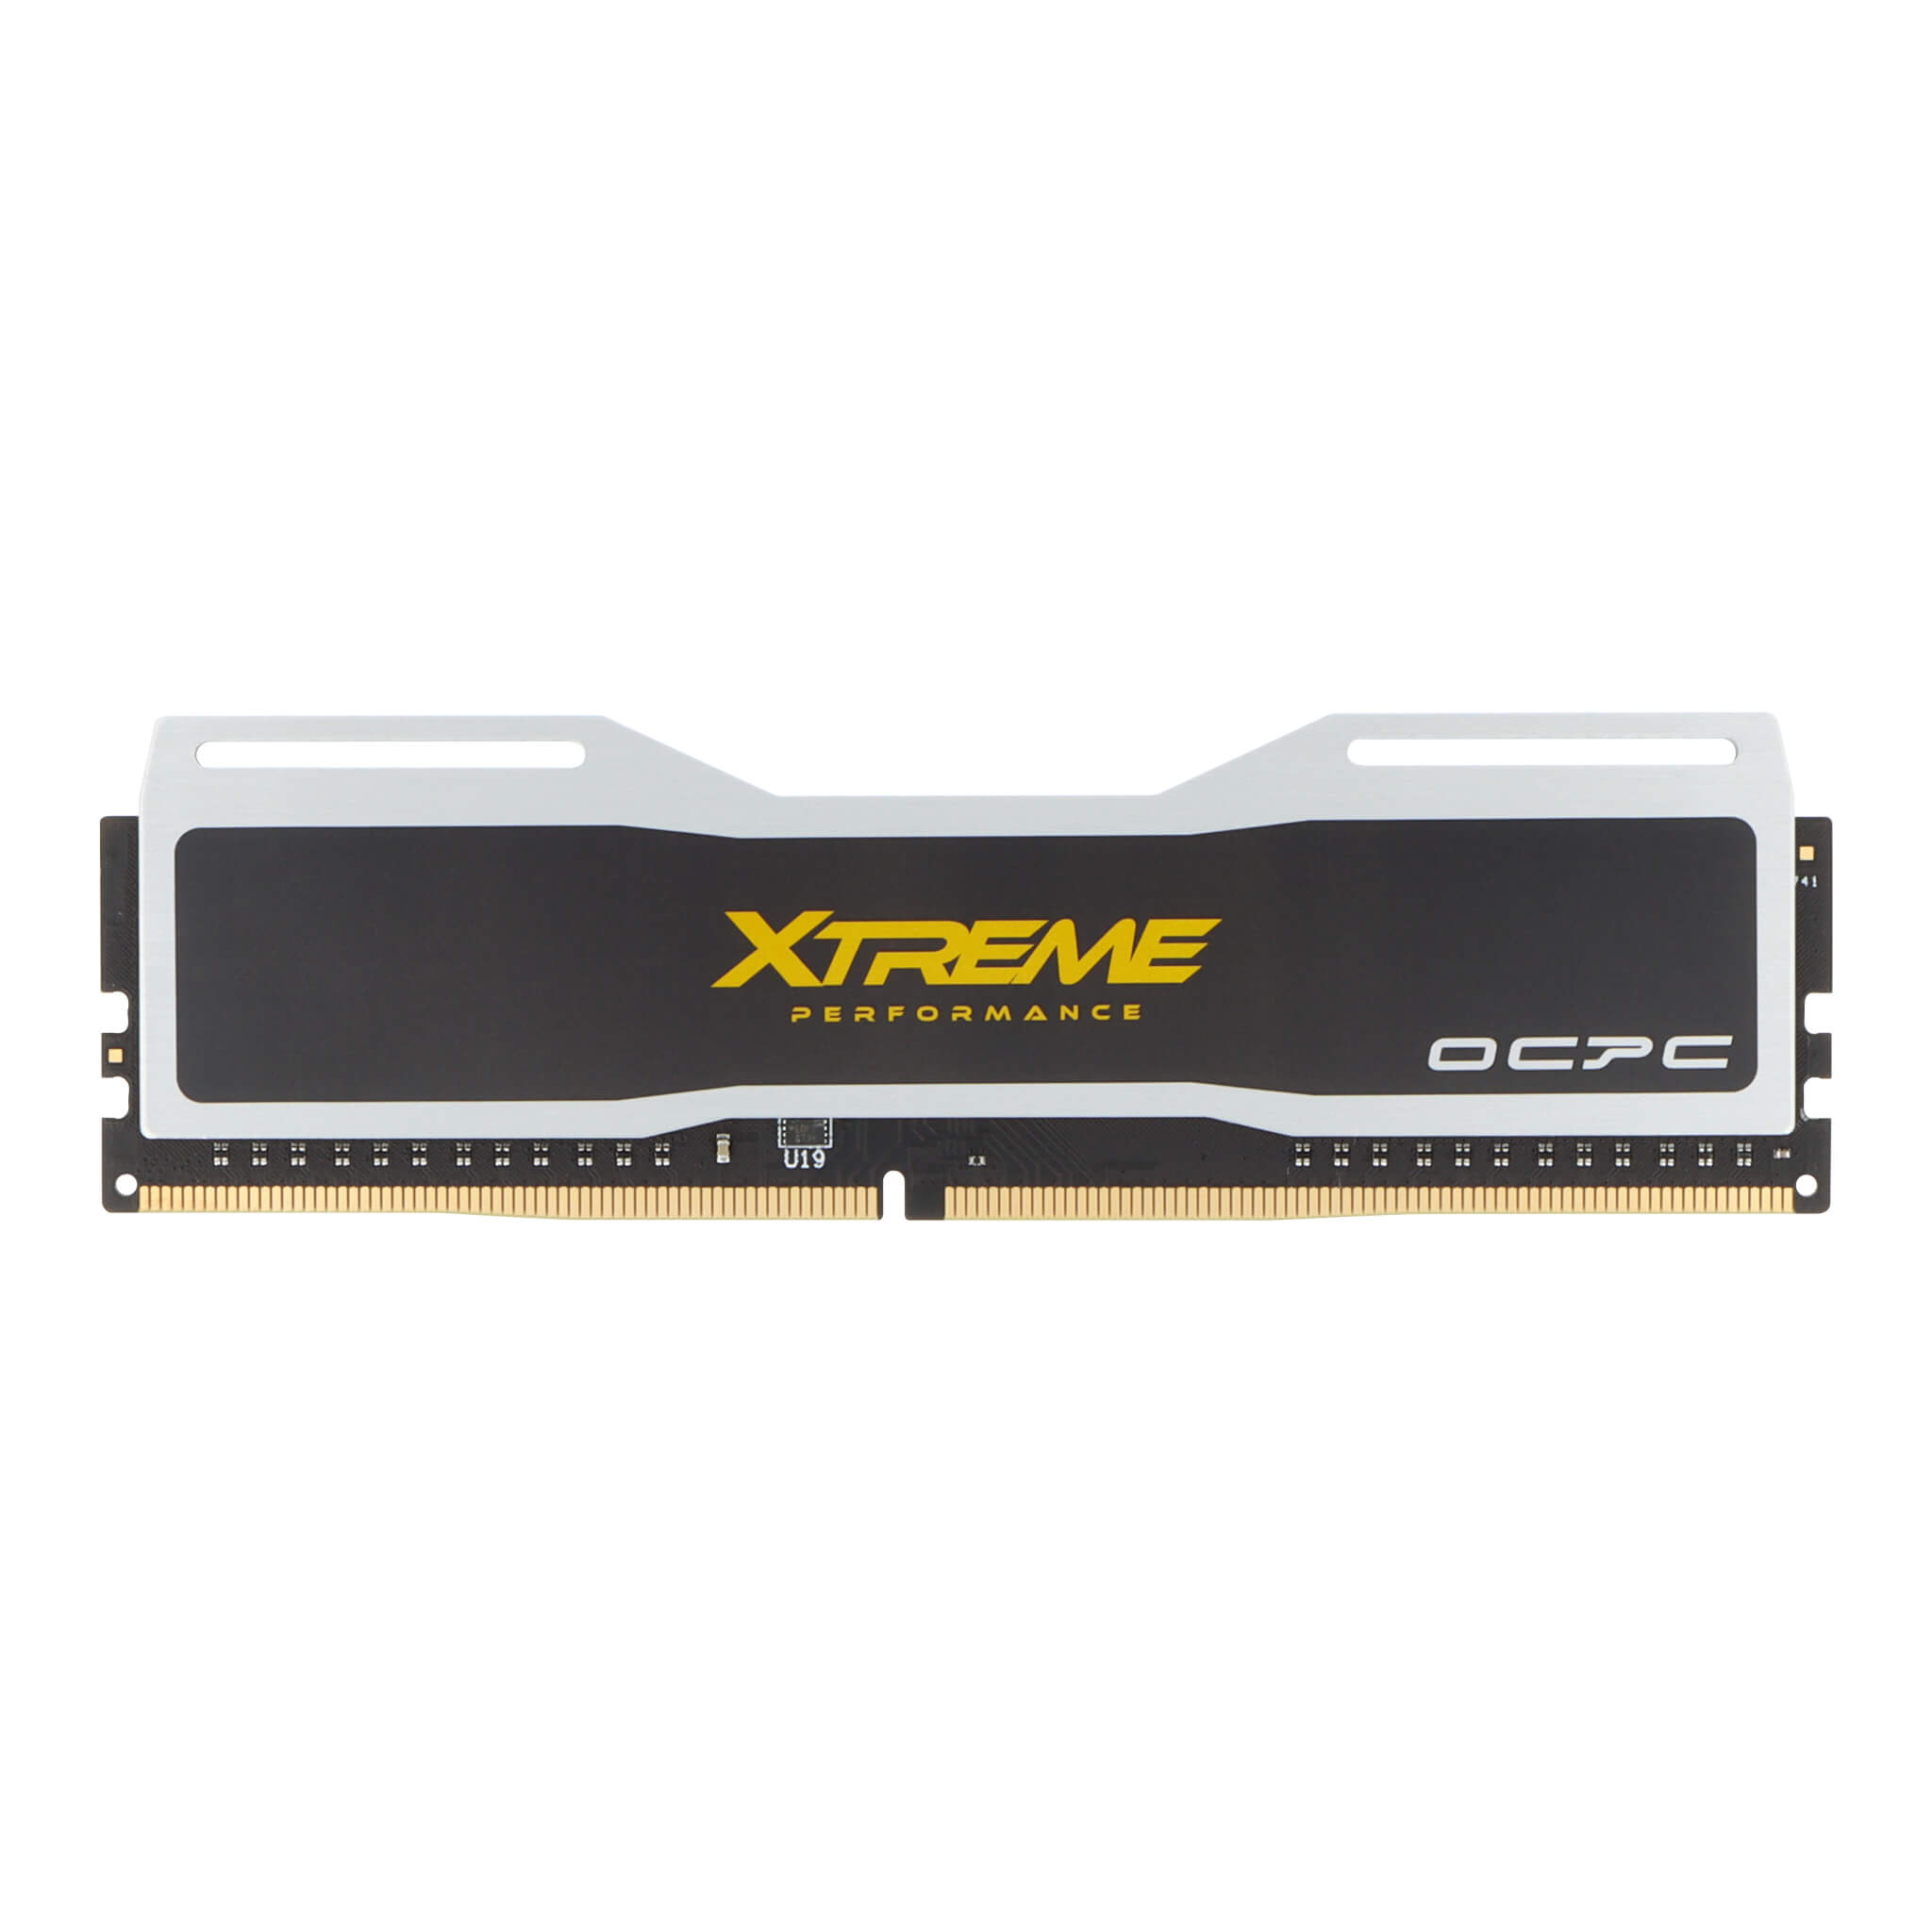 OCPC Xtreme DDR4 - 2400MHz - CL16 - DIMM - Desktop